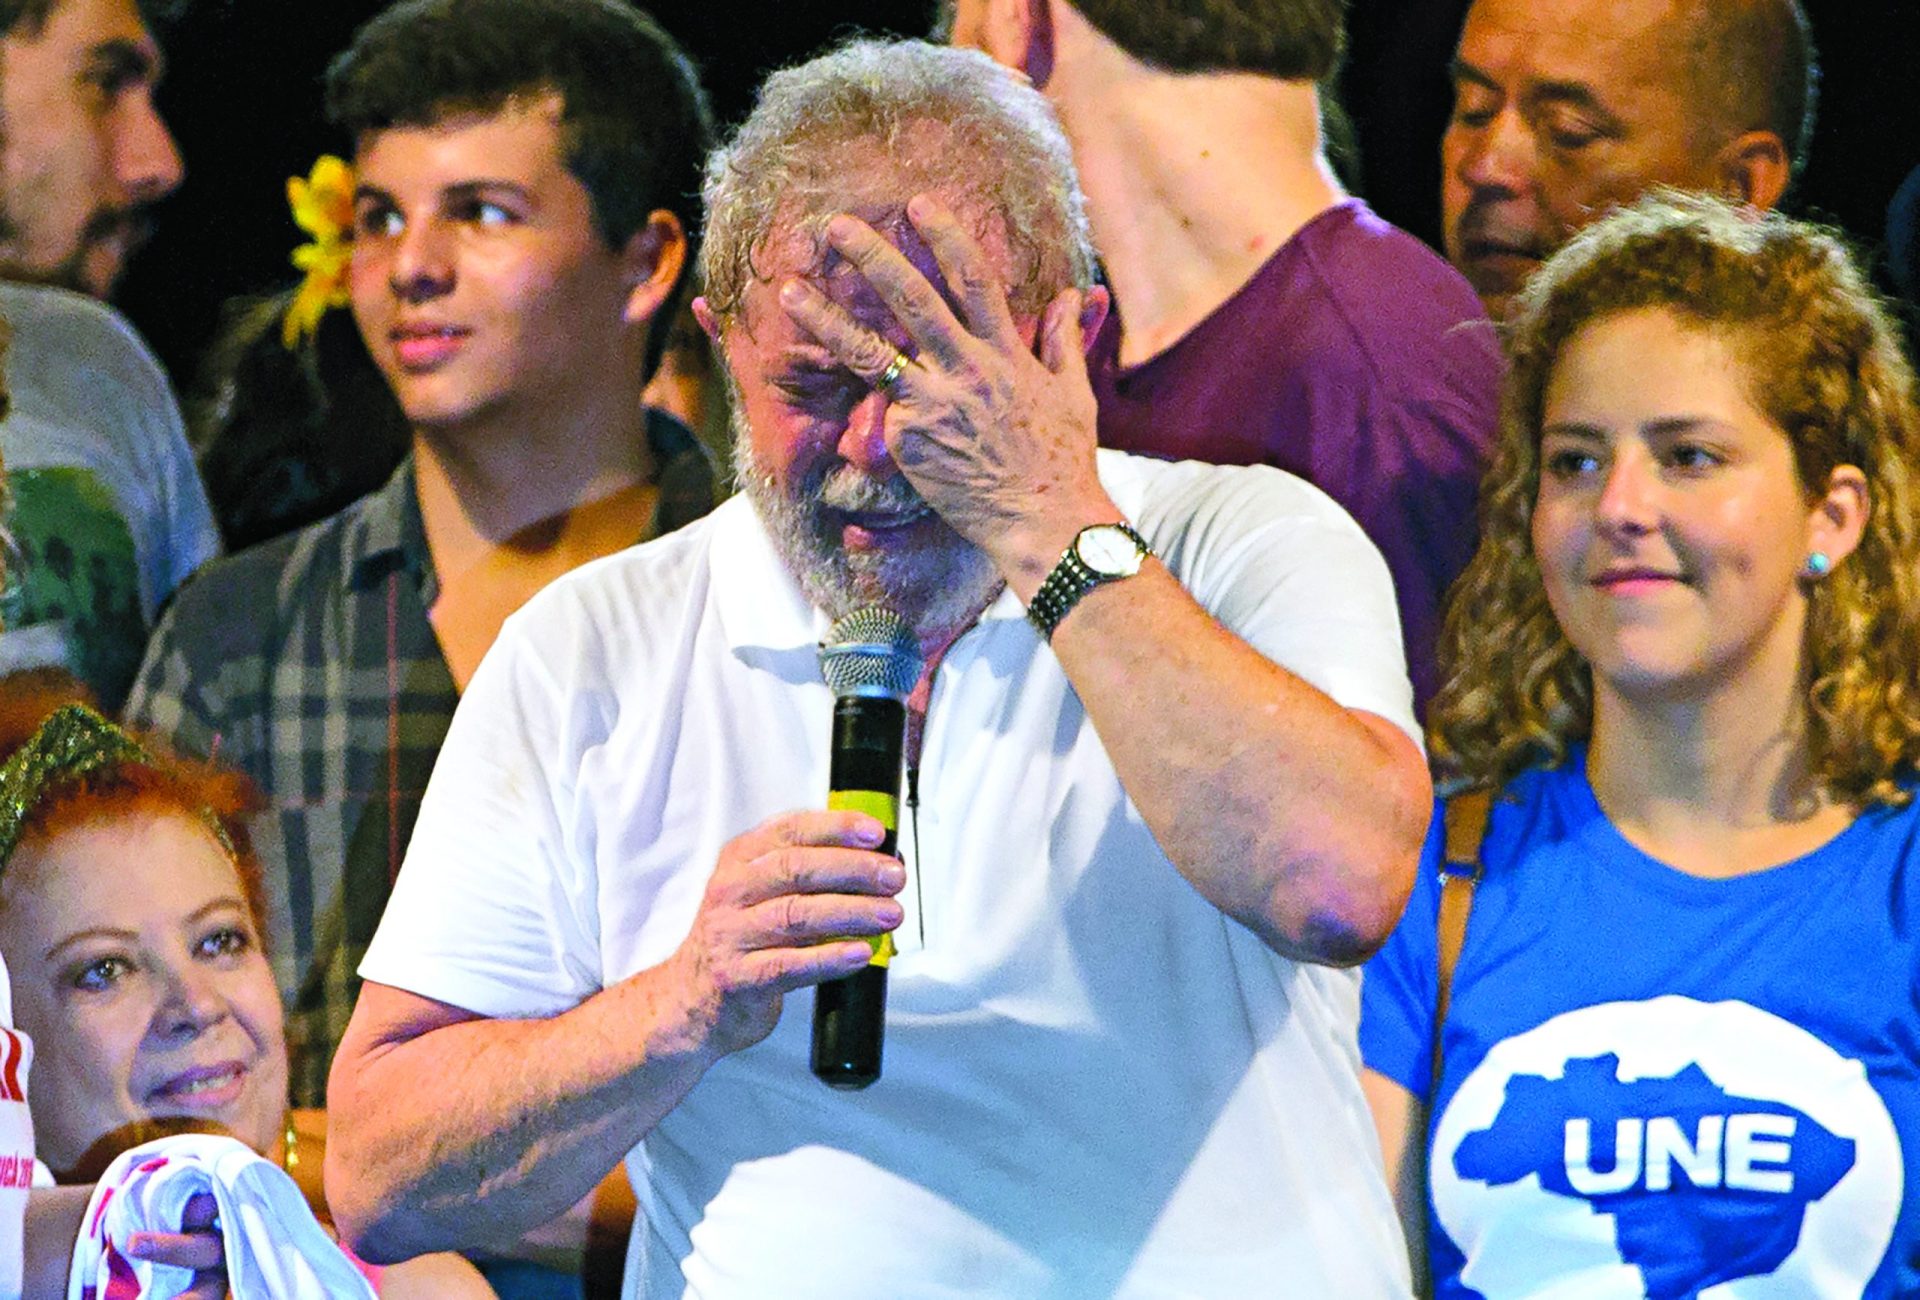 Estatuto de réu a Lula dificulta defesa de Dilma, diz carrasco do PT